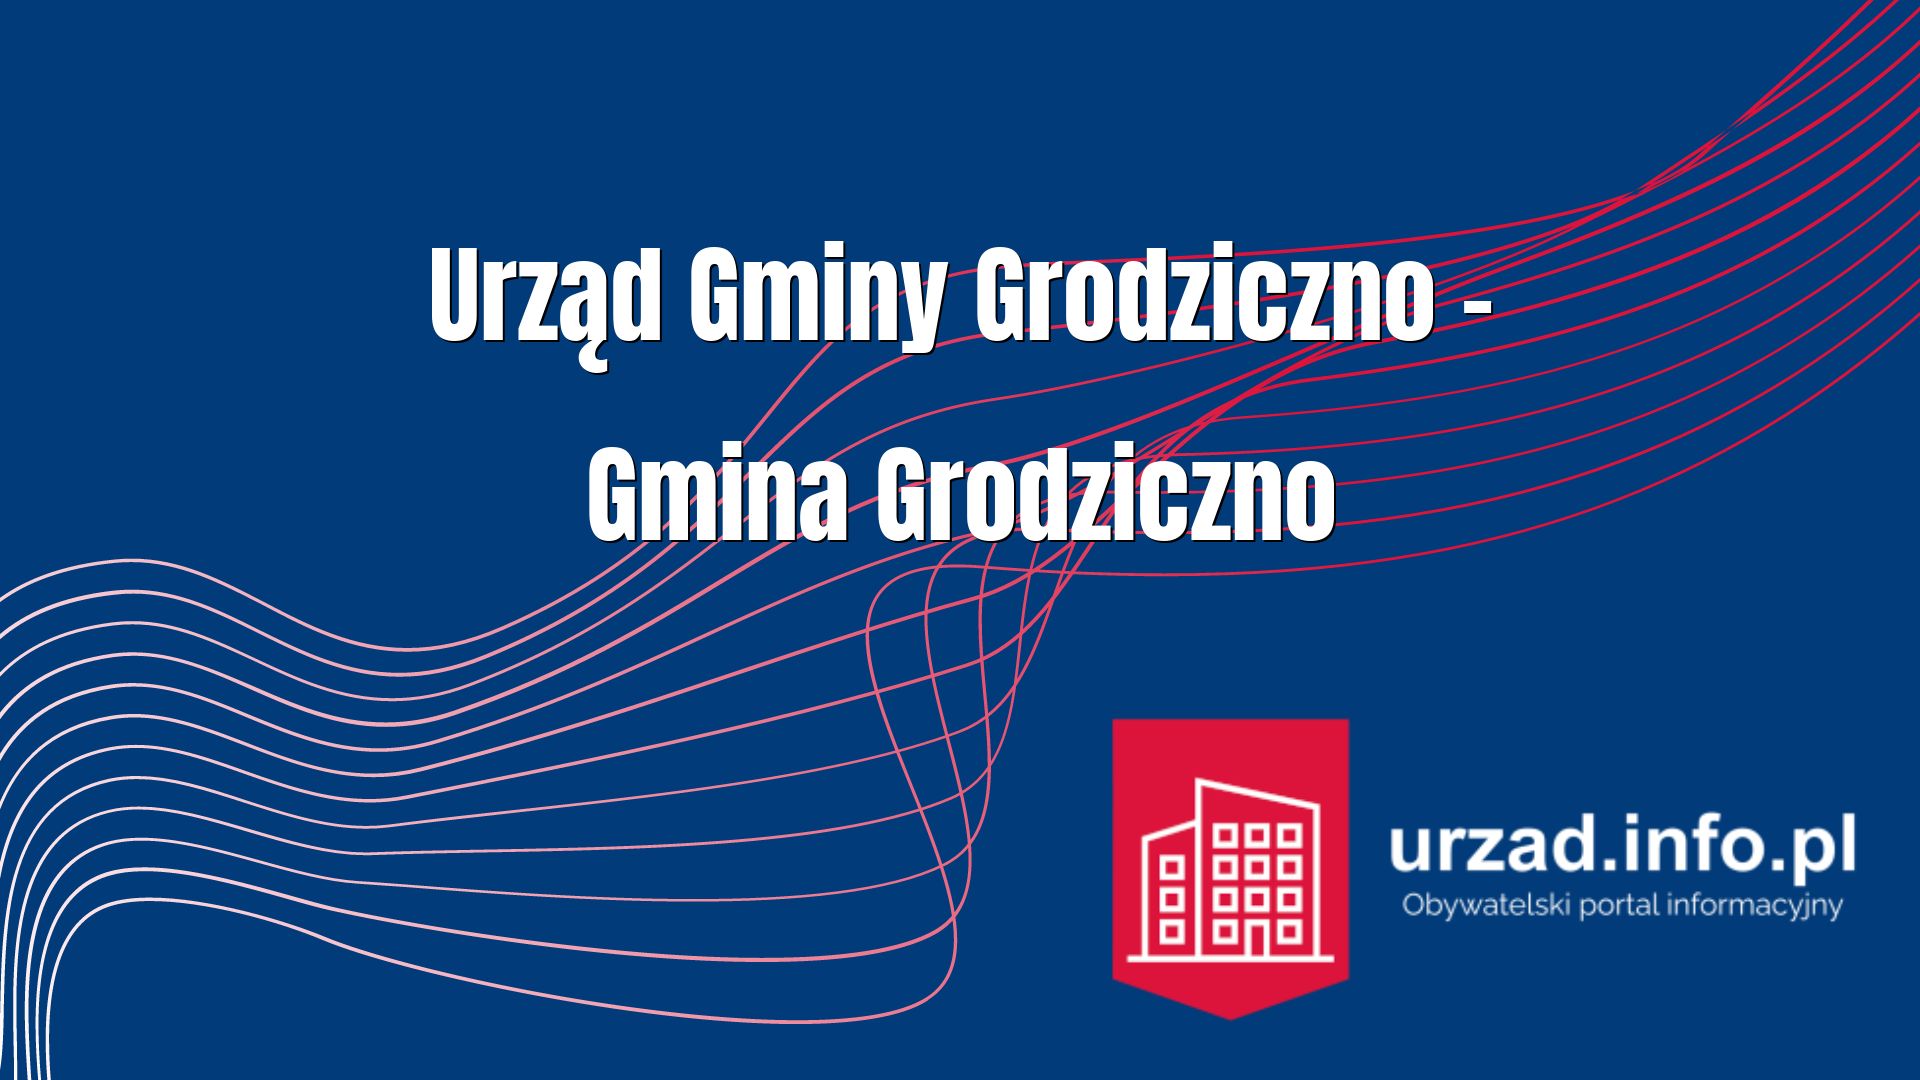 Urząd Gminy Grodziczno – Gmina Grodziczno